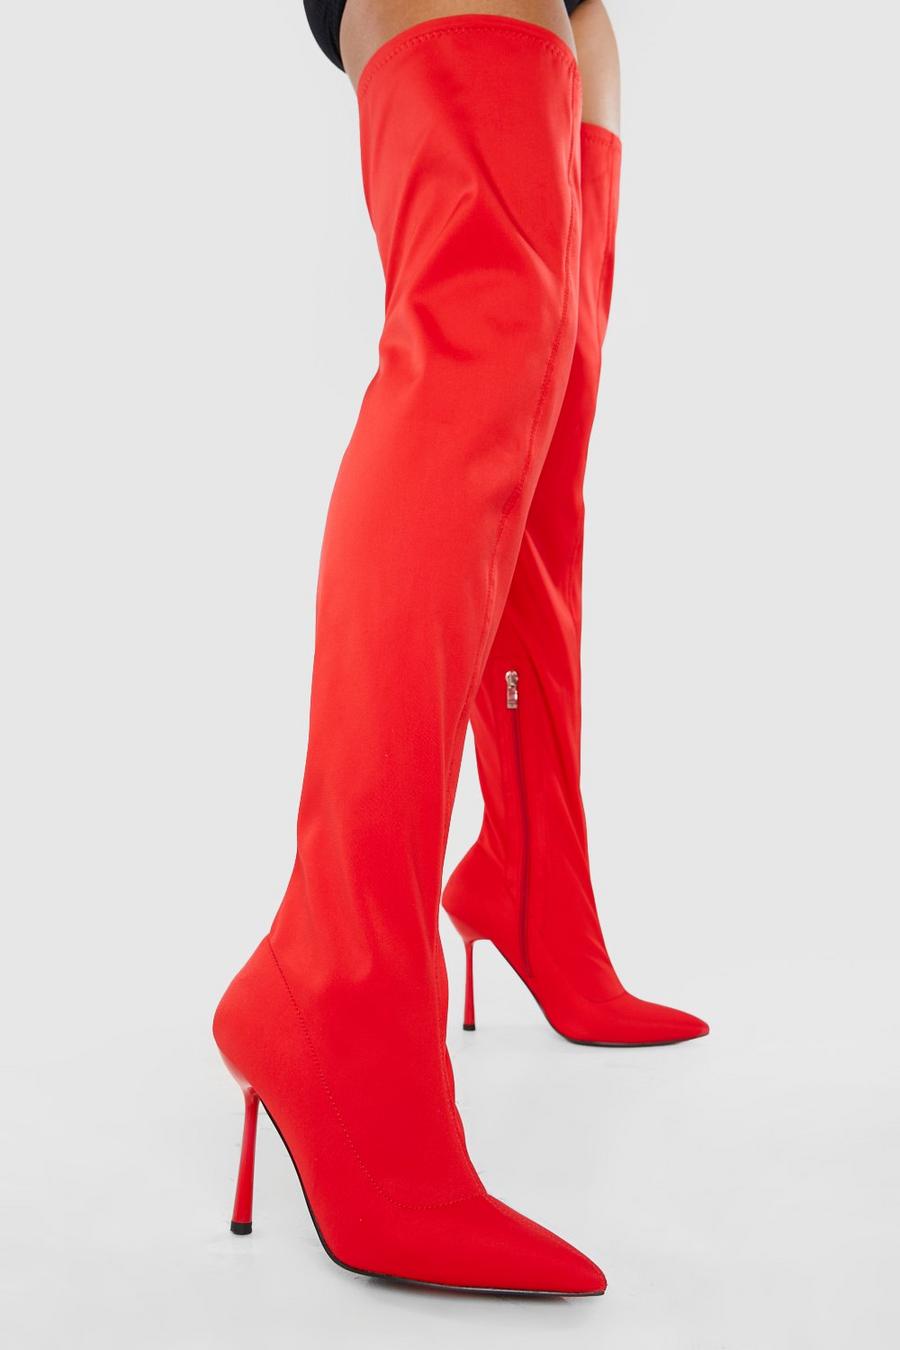 Botas de tacón de aguja por el muslo elásticas de neopreno, Red rojo